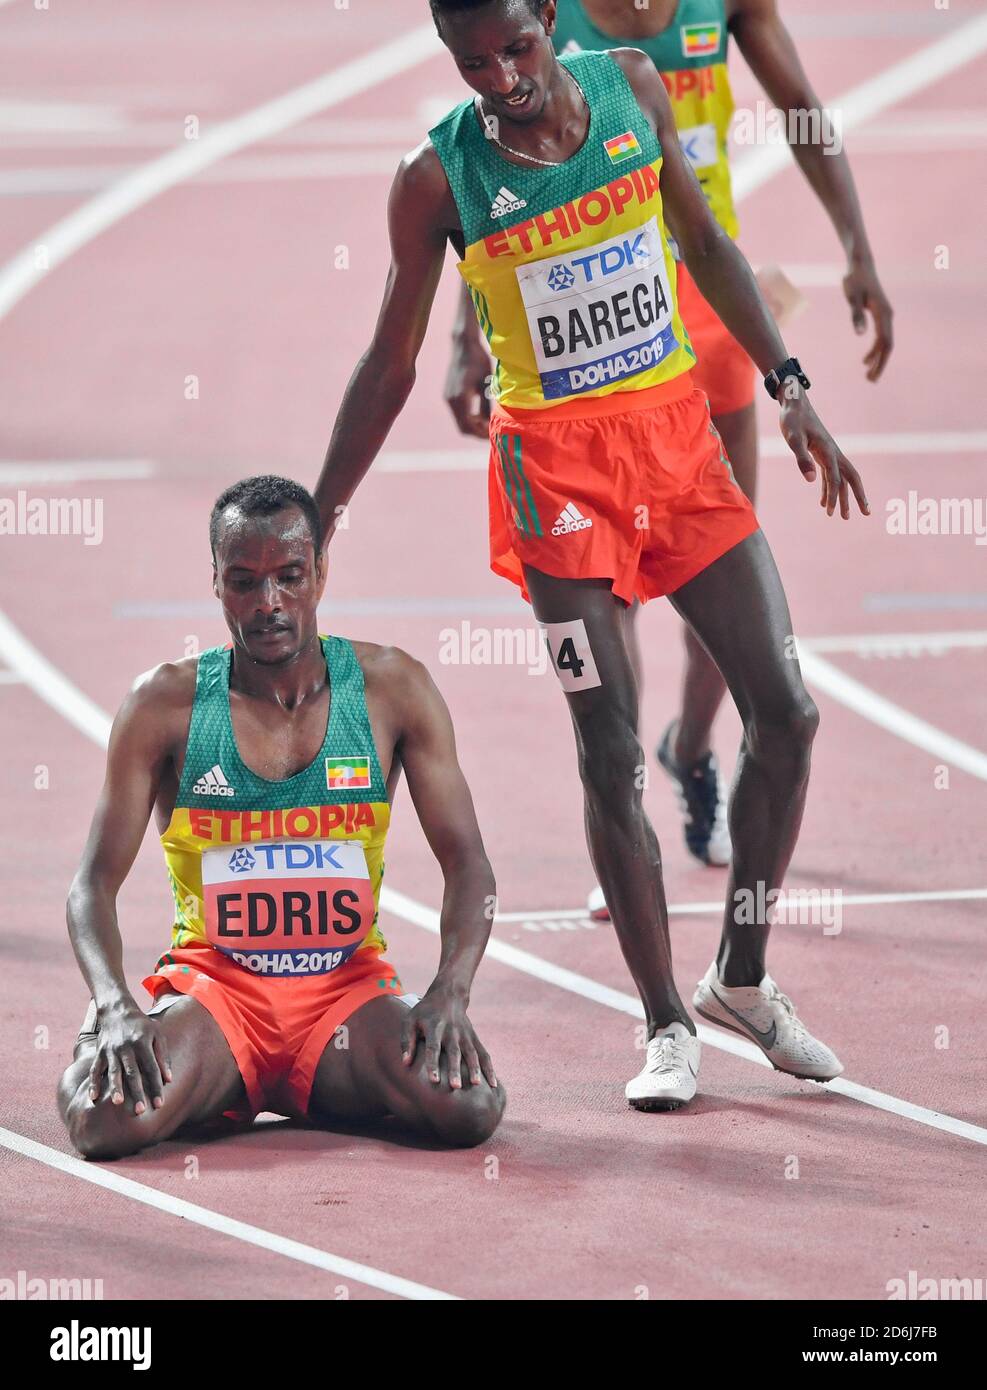 Les athlètes éthiopiens Muktar Edris (Or) et Selemon Barega (argent). 5000 mètres de finale. Championnats du monde d'athlétisme de l'IAAF, Doha 2019 Banque D'Images